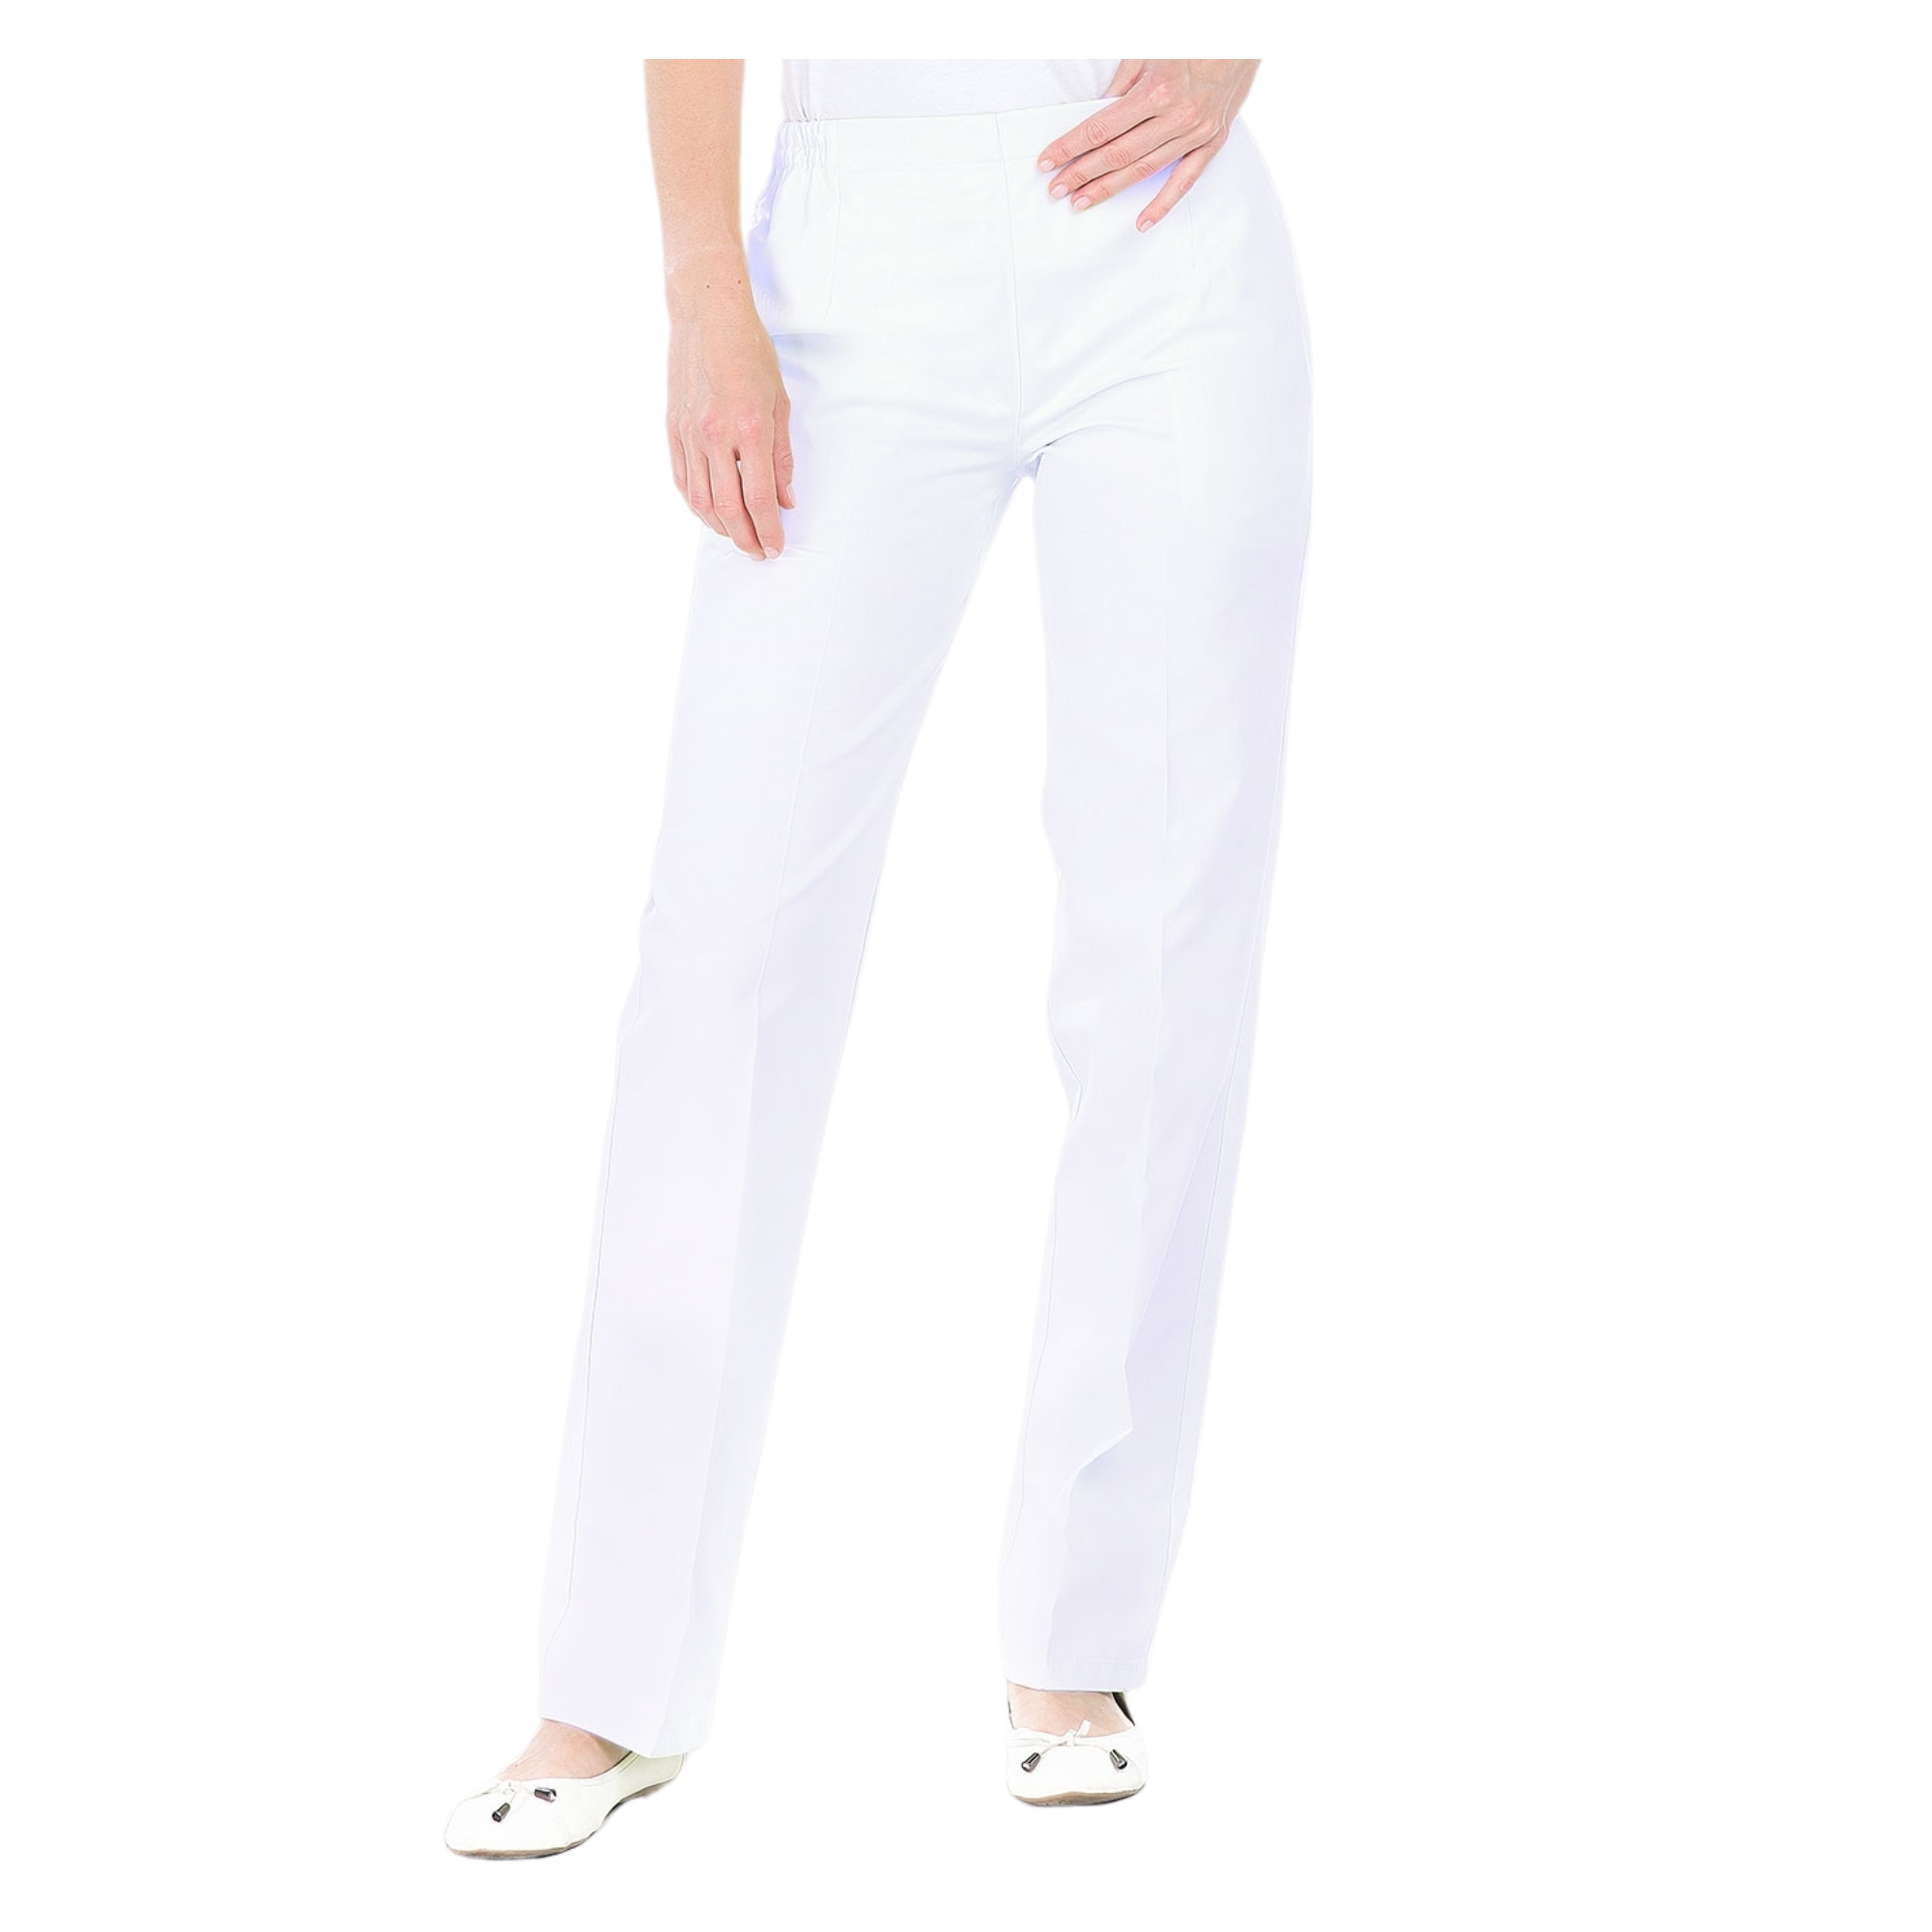 [FIN DE SERIE] Manille - Pantalon femme blanc - Ceinture élastique - Sans poche - Taille 0